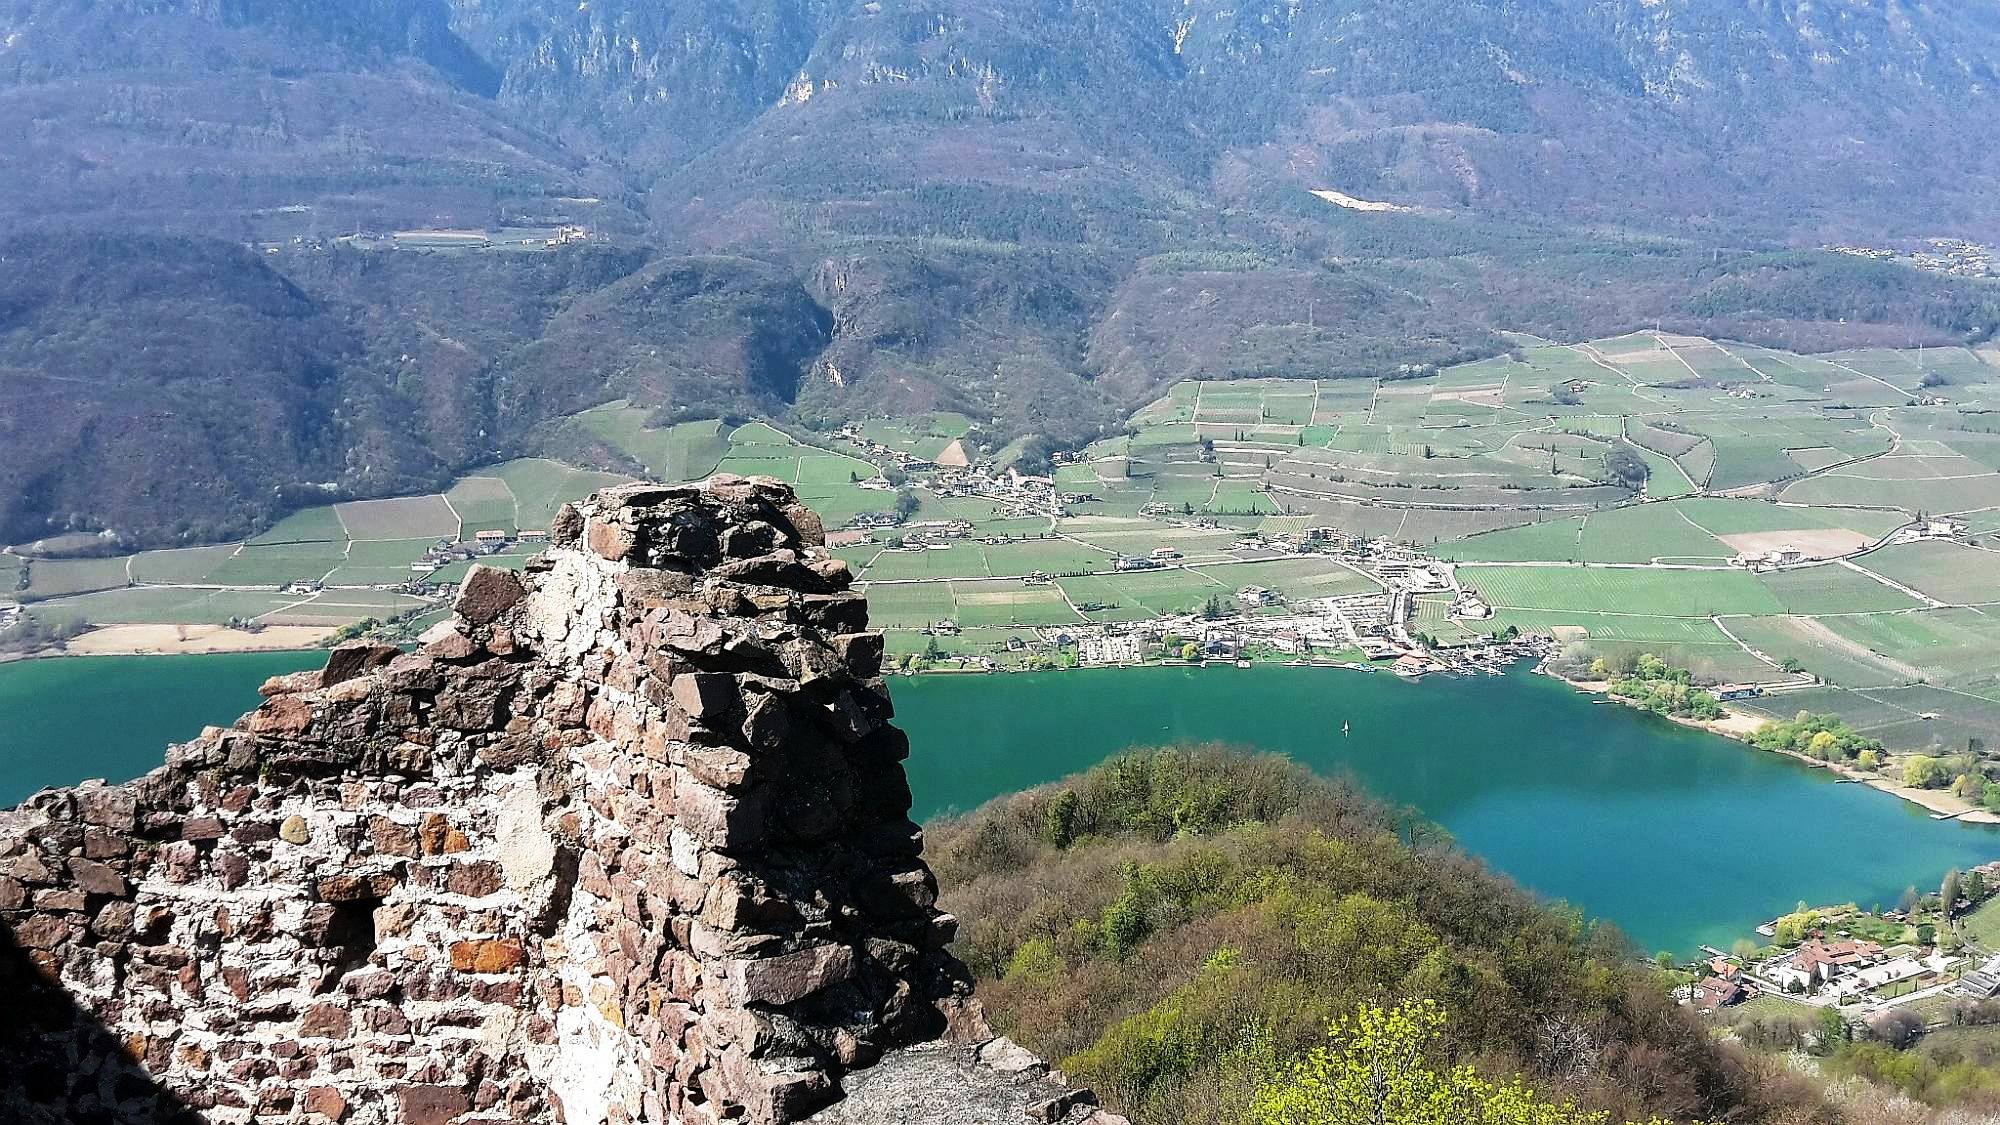 Wanderung oberhalb des Kalterer Sees: Ruine Leuchtenburg, Rosszähne und Warmlöcher